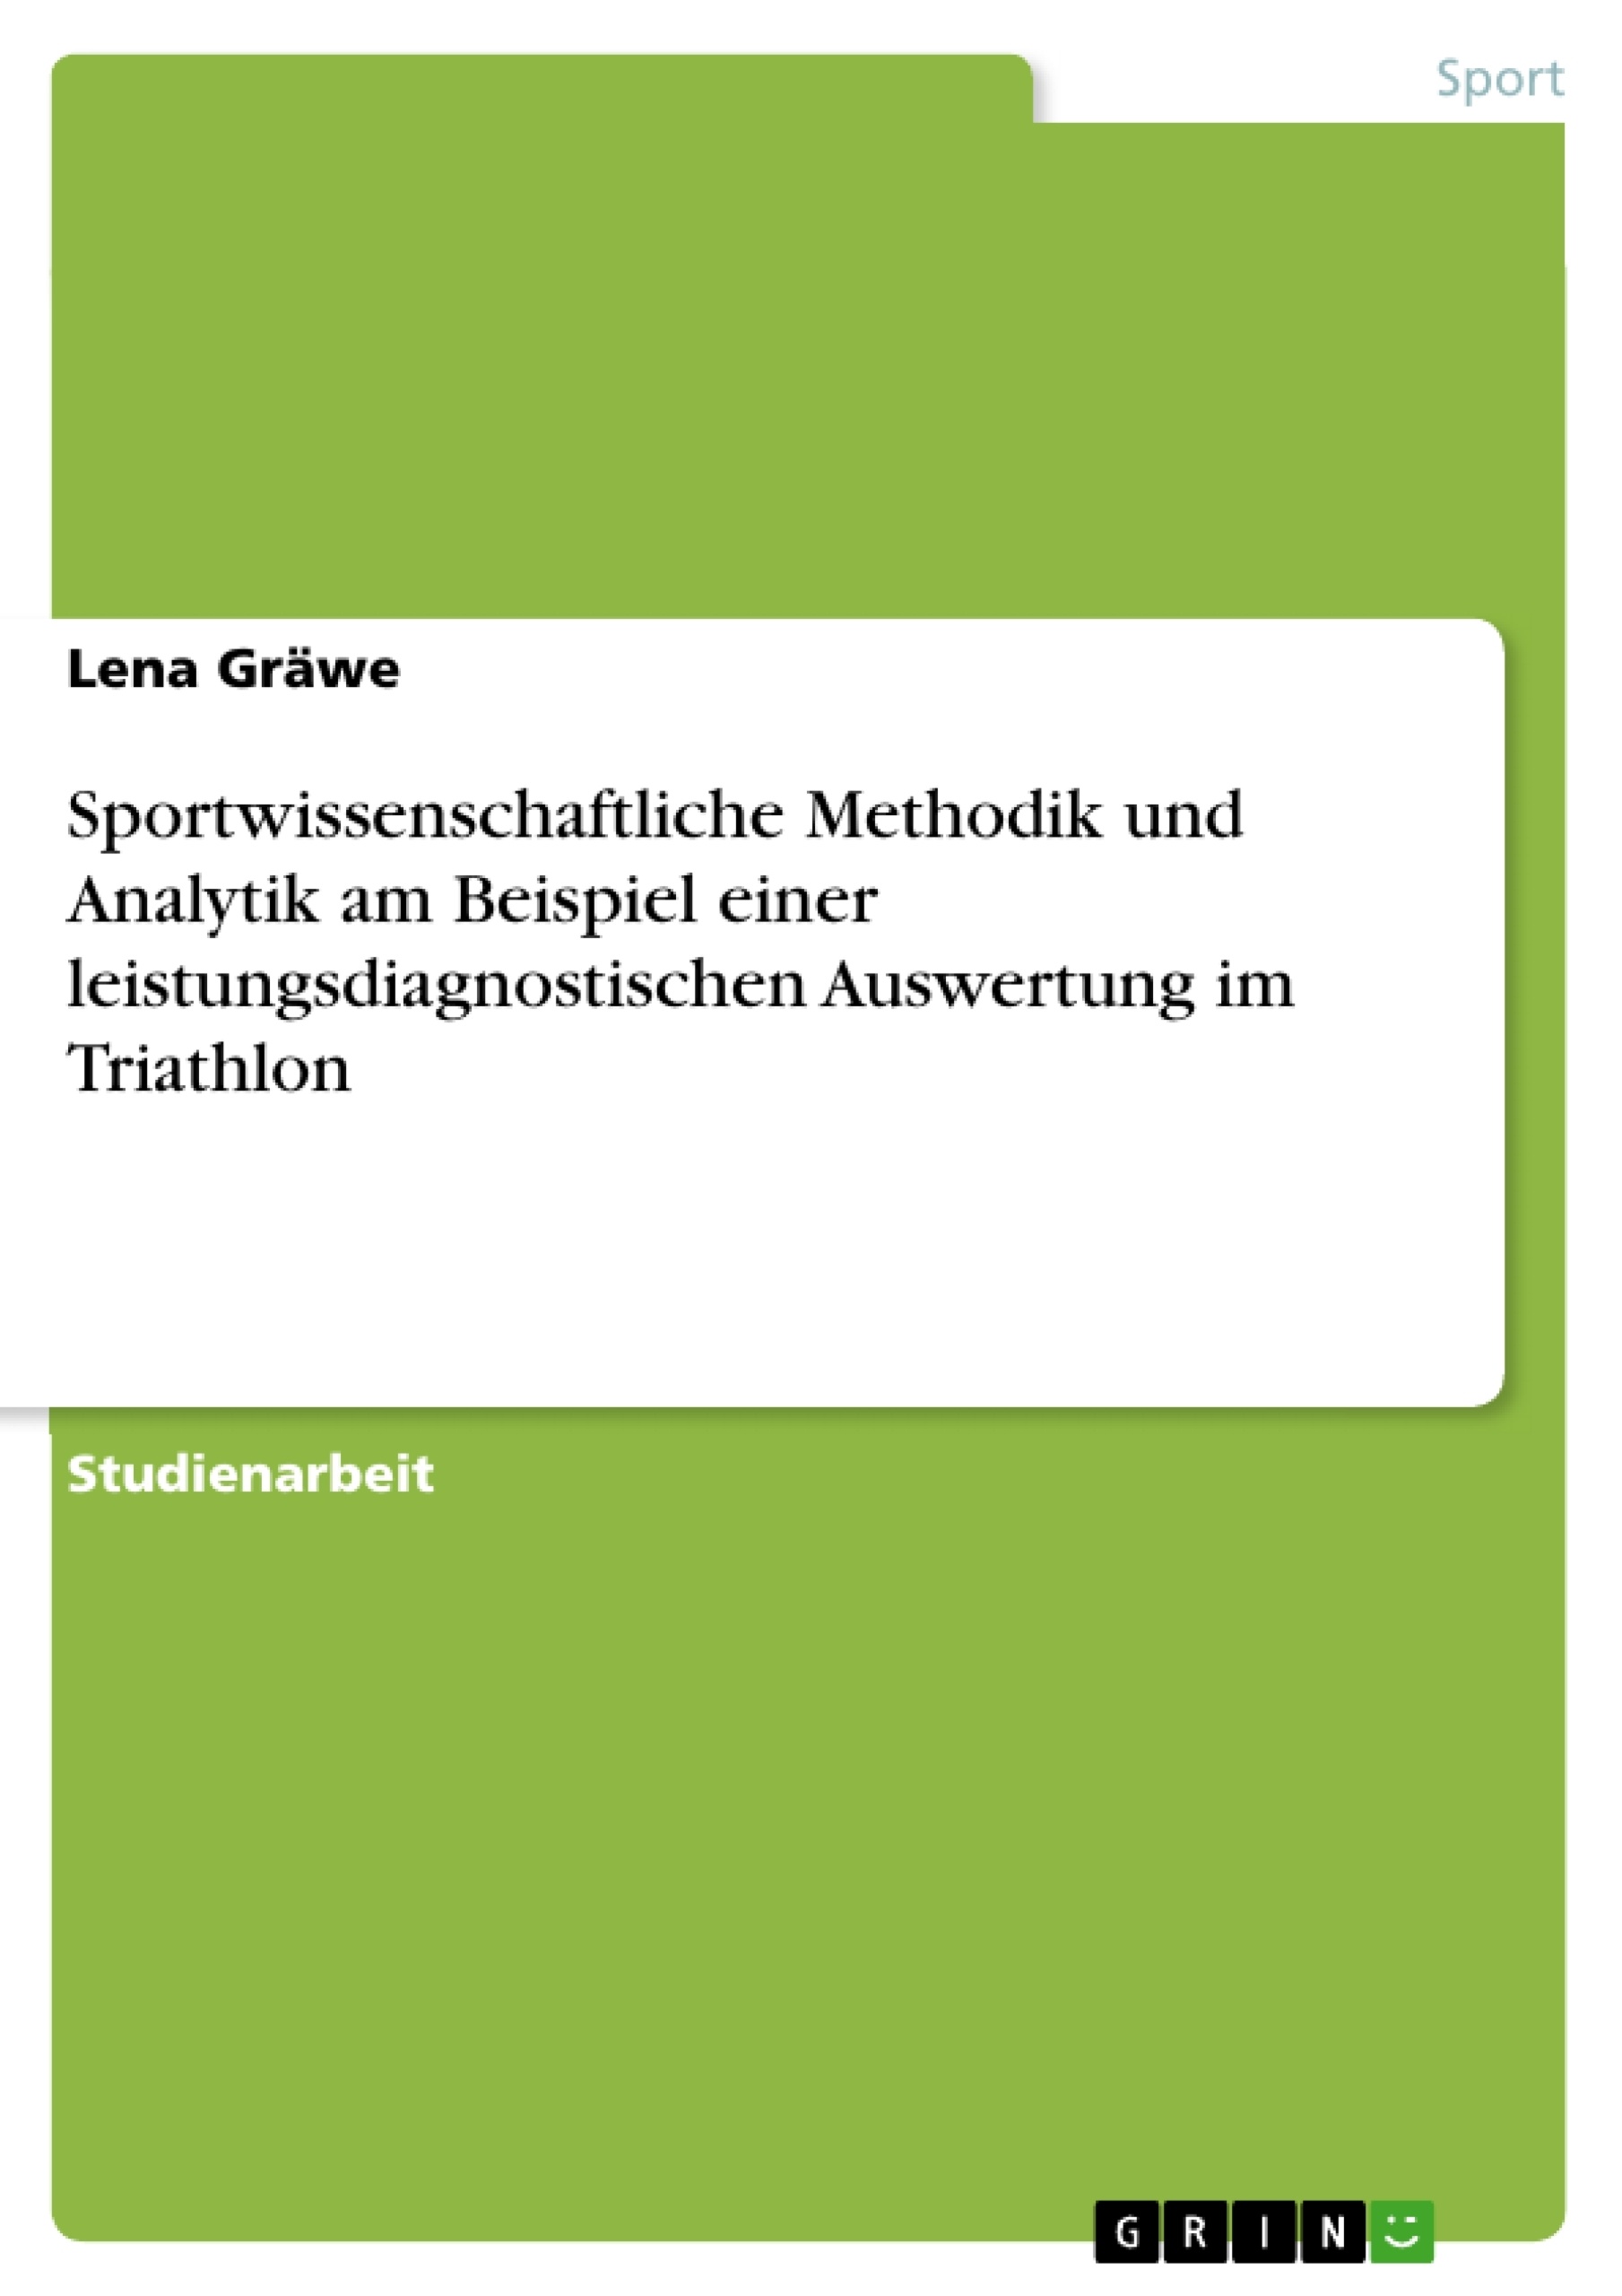 Title: Sportwissenschaftliche Methodik und Analytik am Beispiel einer leistungsdiagnostischen Auswertung im Triathlon